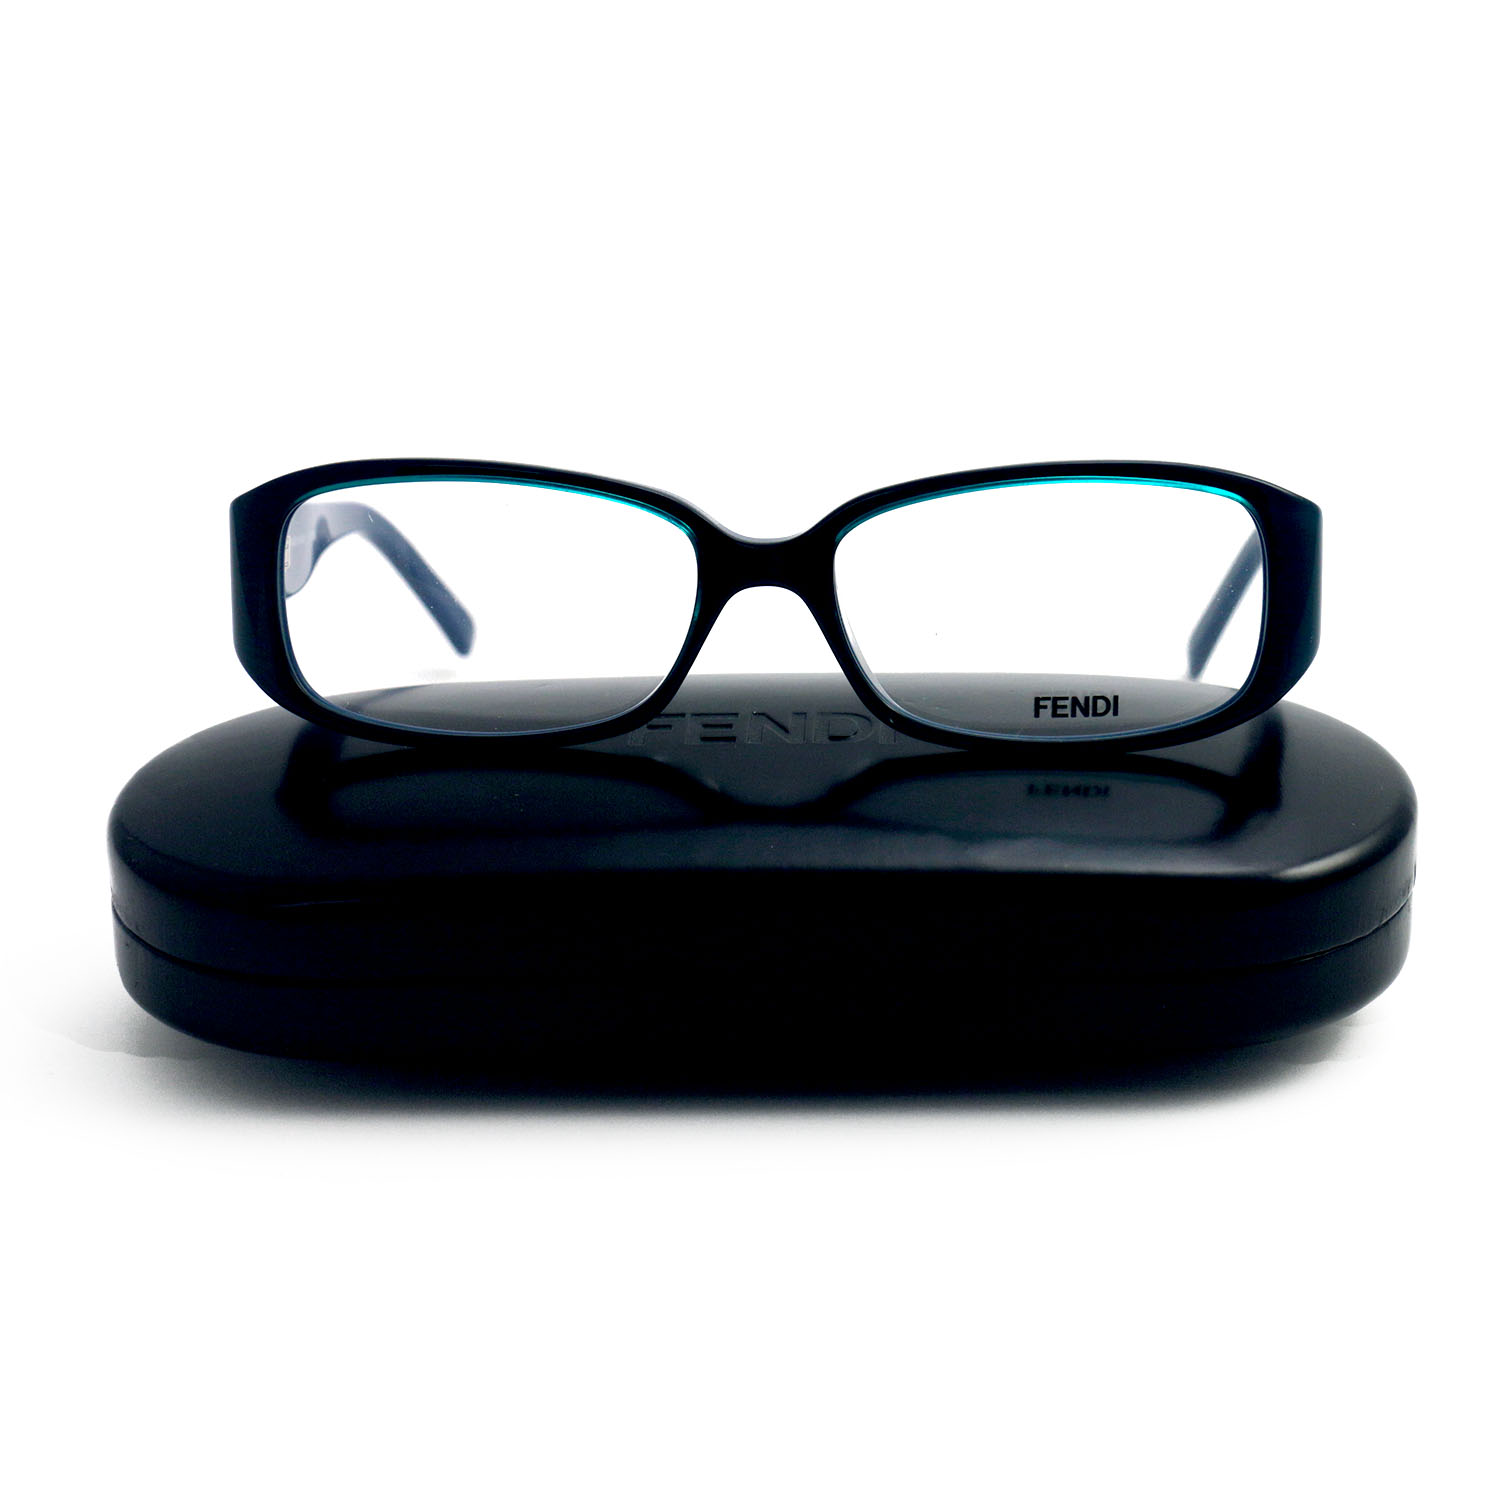 Fendi Eyeglasses Women Blue Frames Rectangle 54 16 135 F808l 042 Ebay